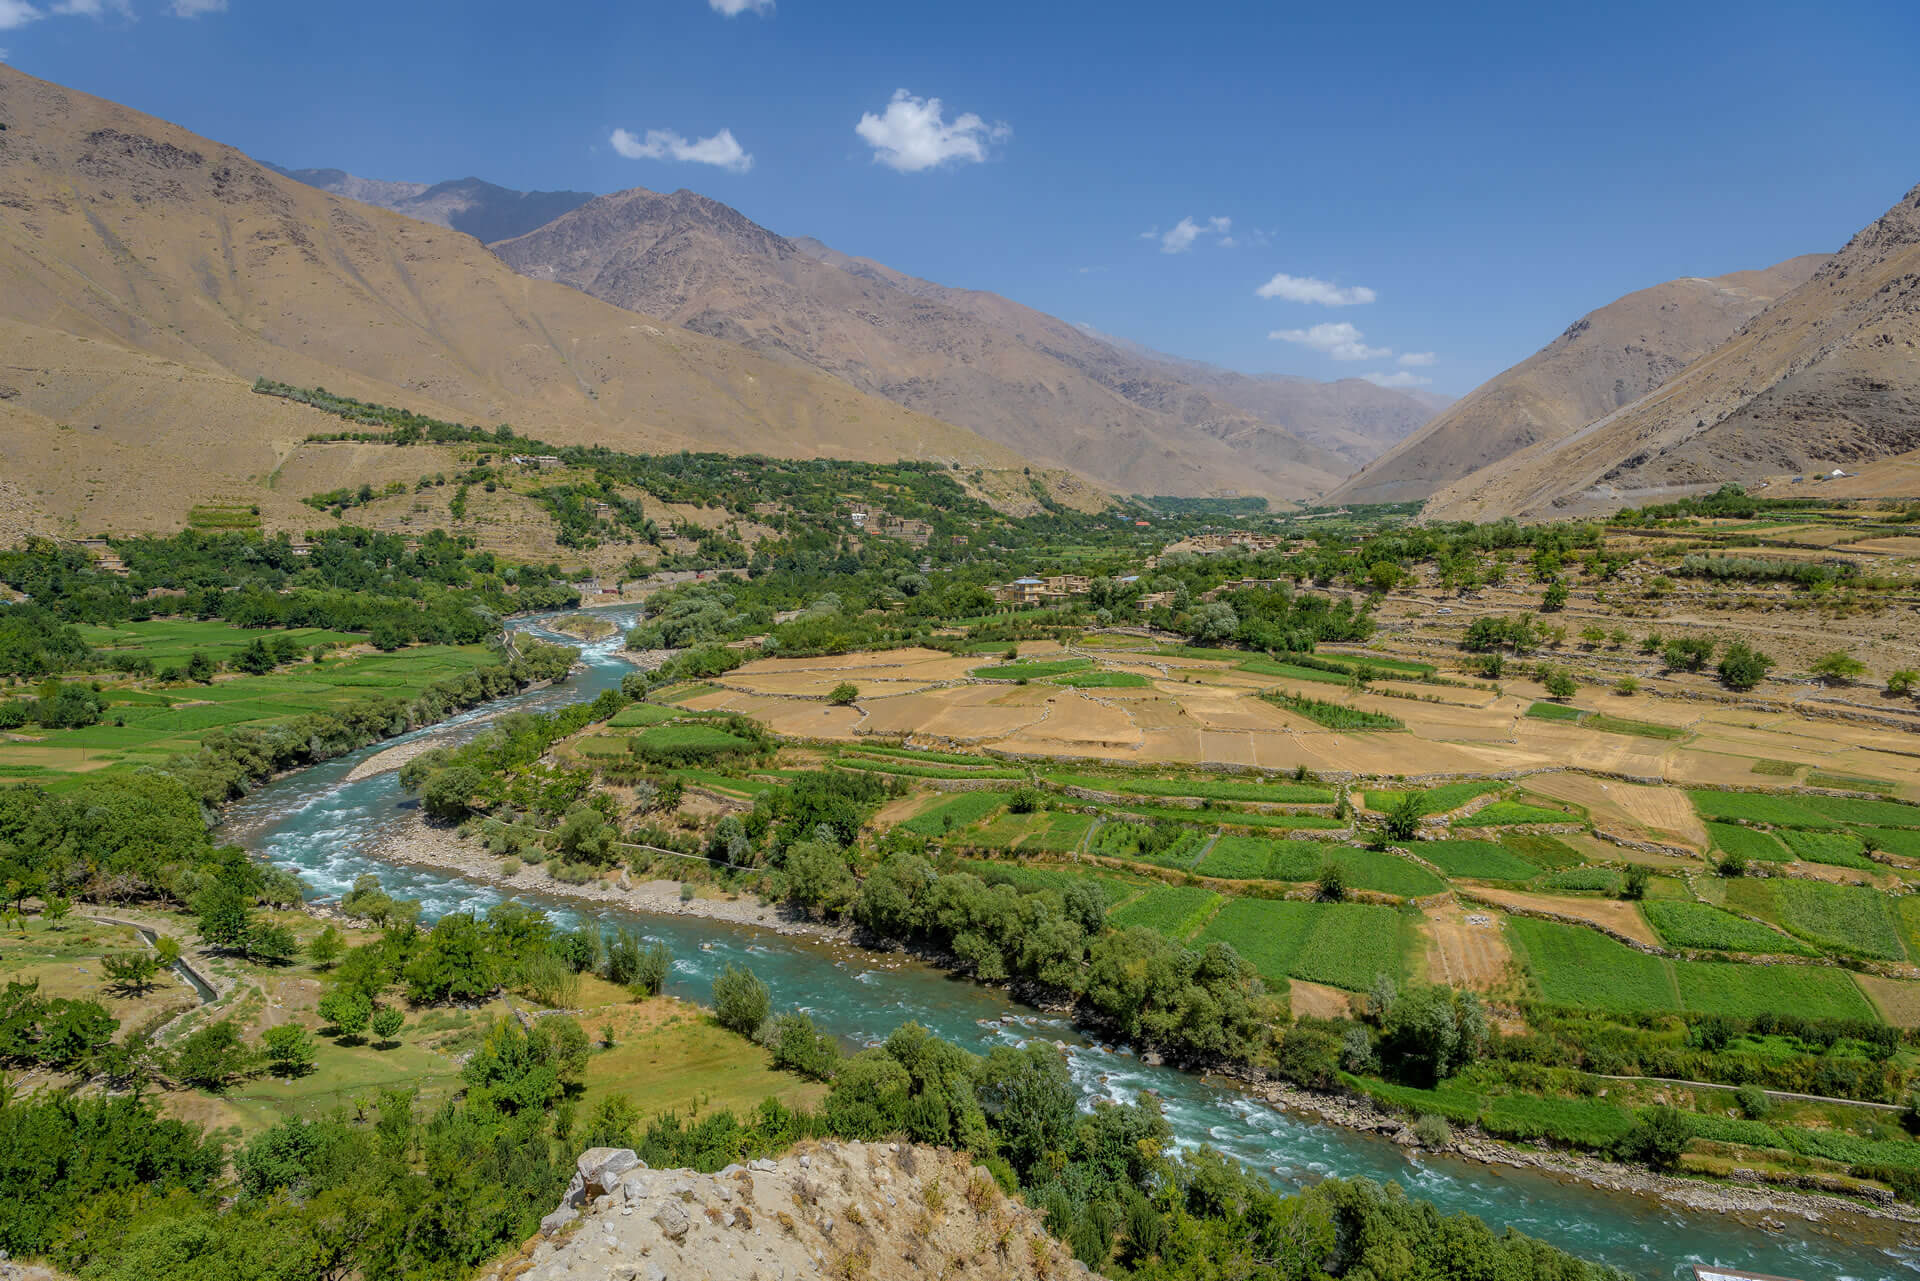 Panjshir valley in Eastern Afghanistan